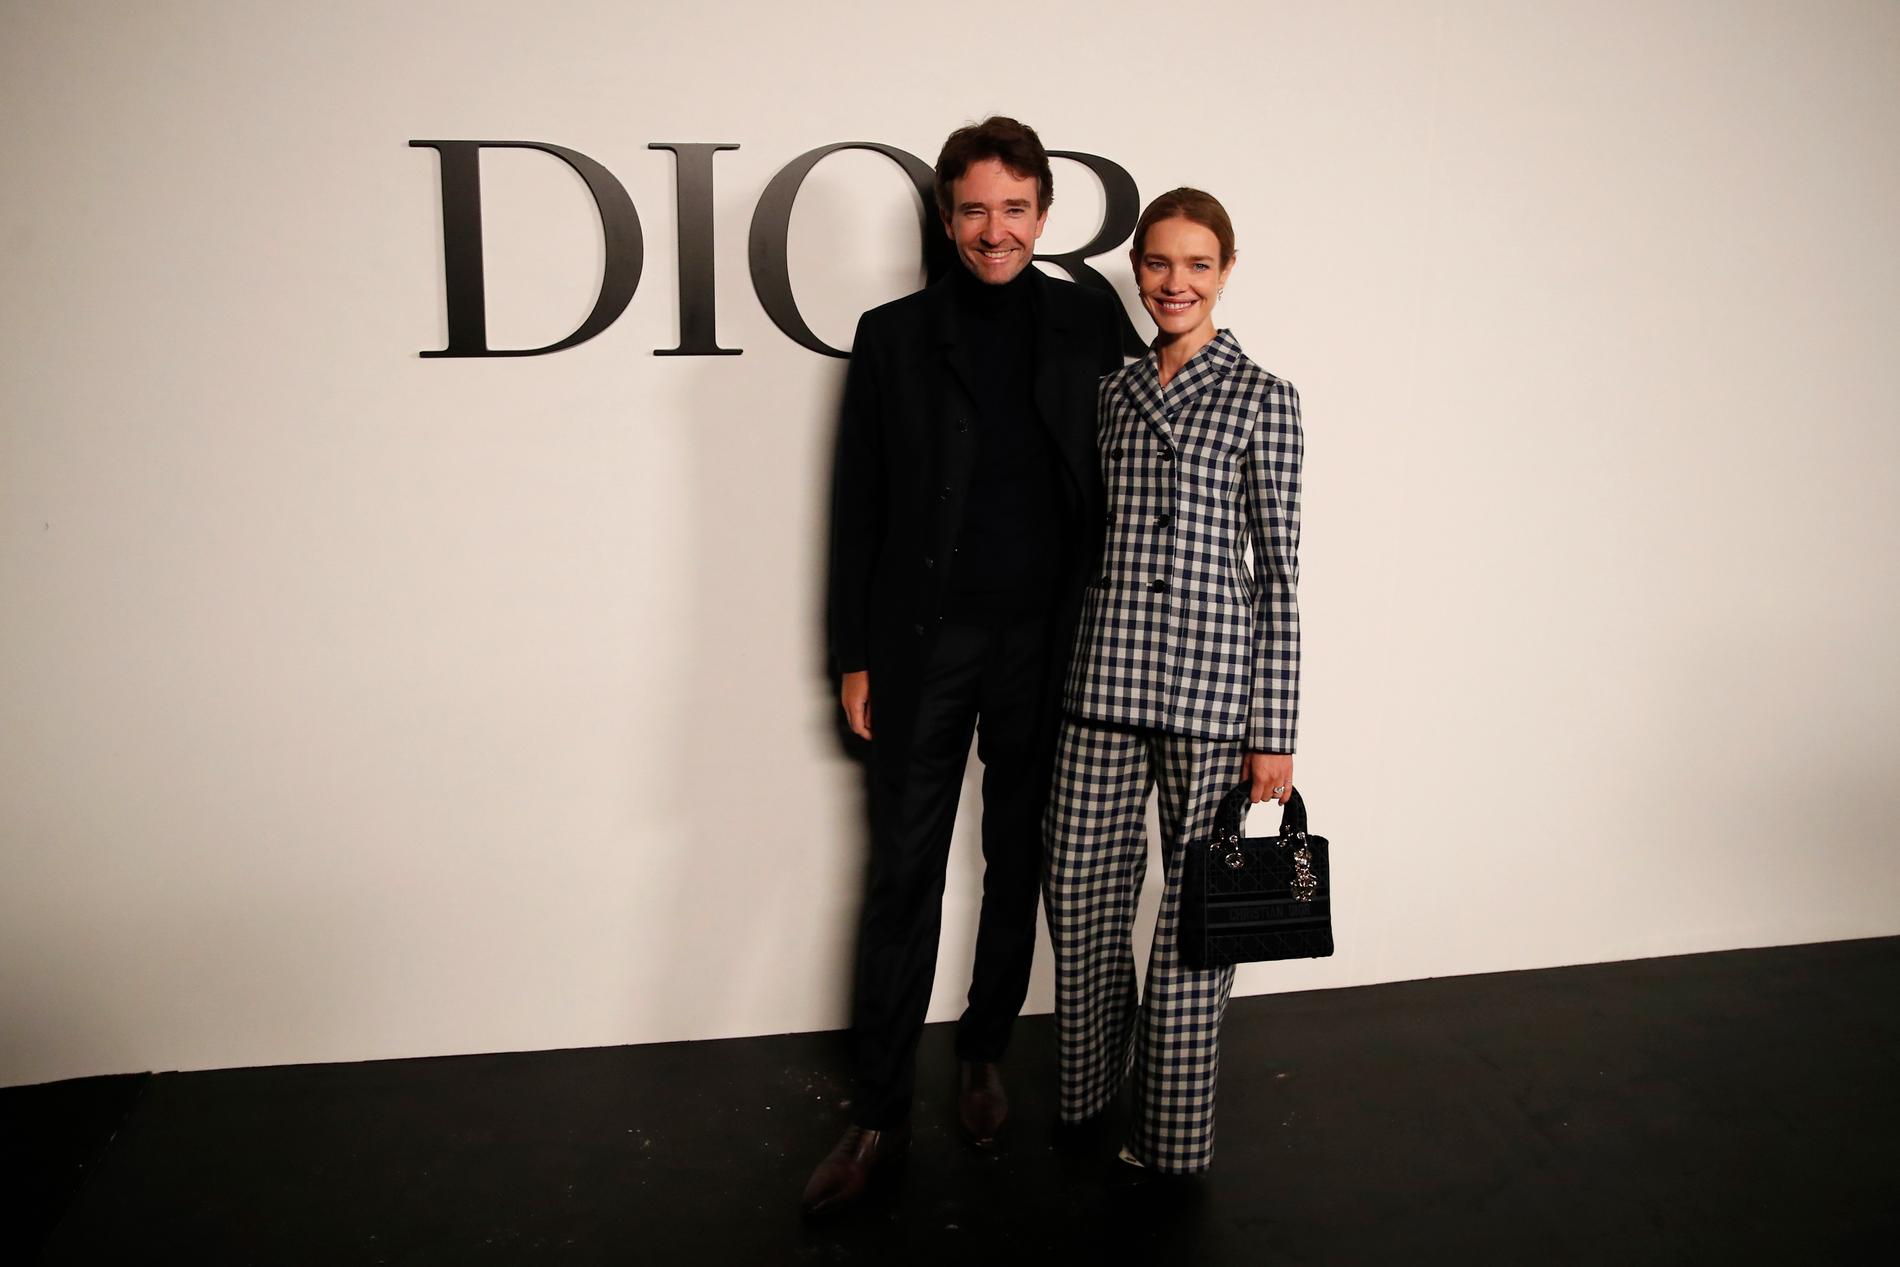 Bernard Arnaults äldste son Antoine Arnault är vd för LVMH-koncernens holdingbolag Christian Dior SE. Här tillsammans med sin fru, supermodellen Natalia Vodianova. Arkivbild.